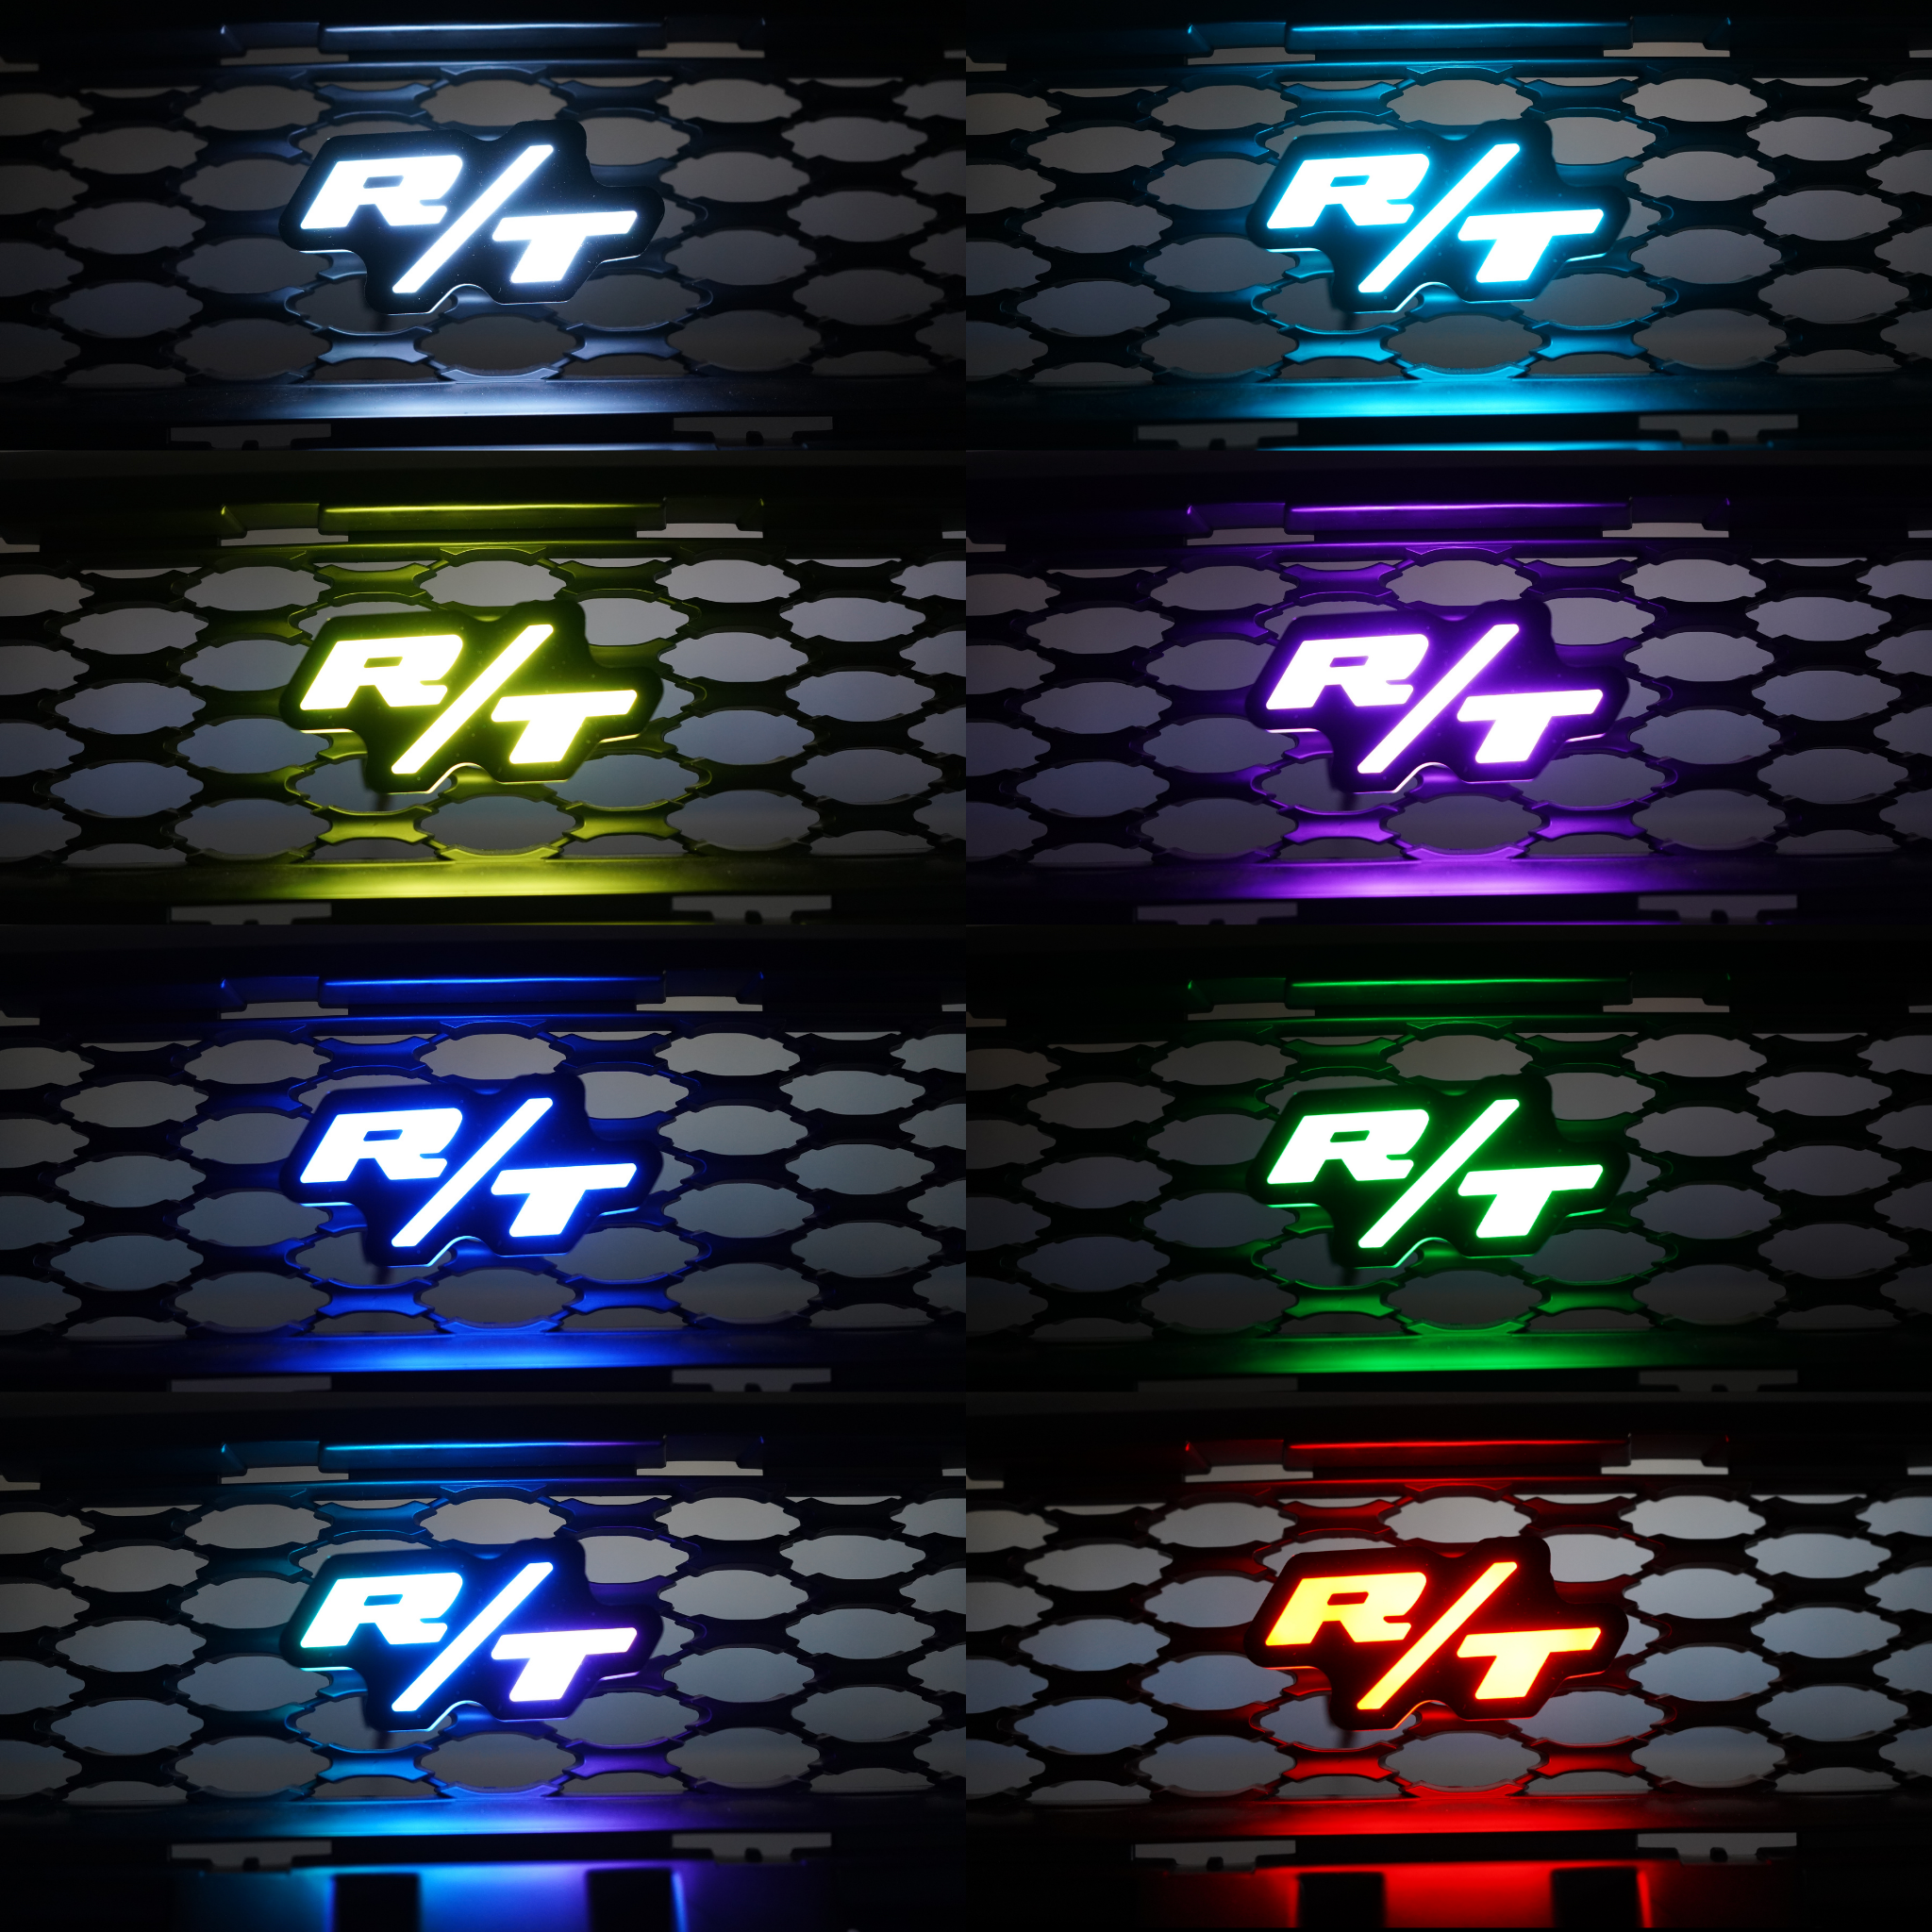 LED Badges: Multicolor (Mopar vehicles)